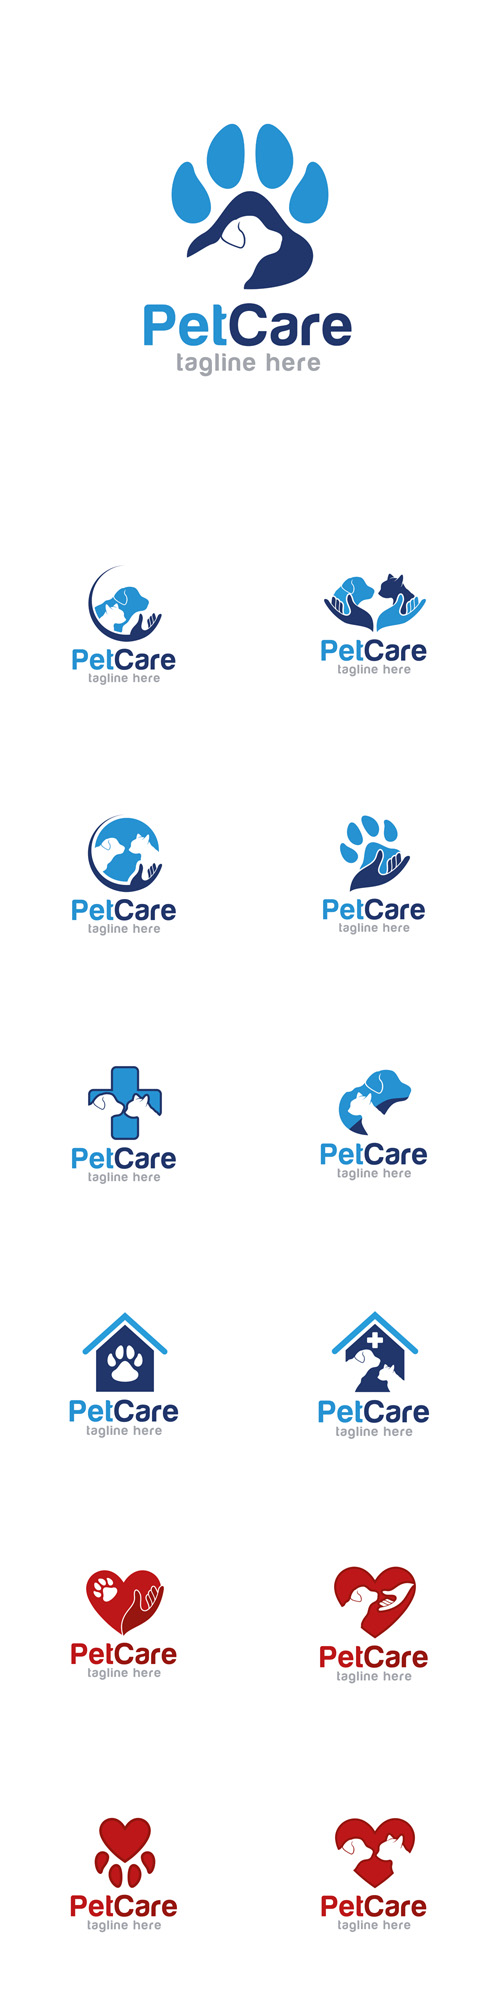 Vectors - Pet Care Logos Design